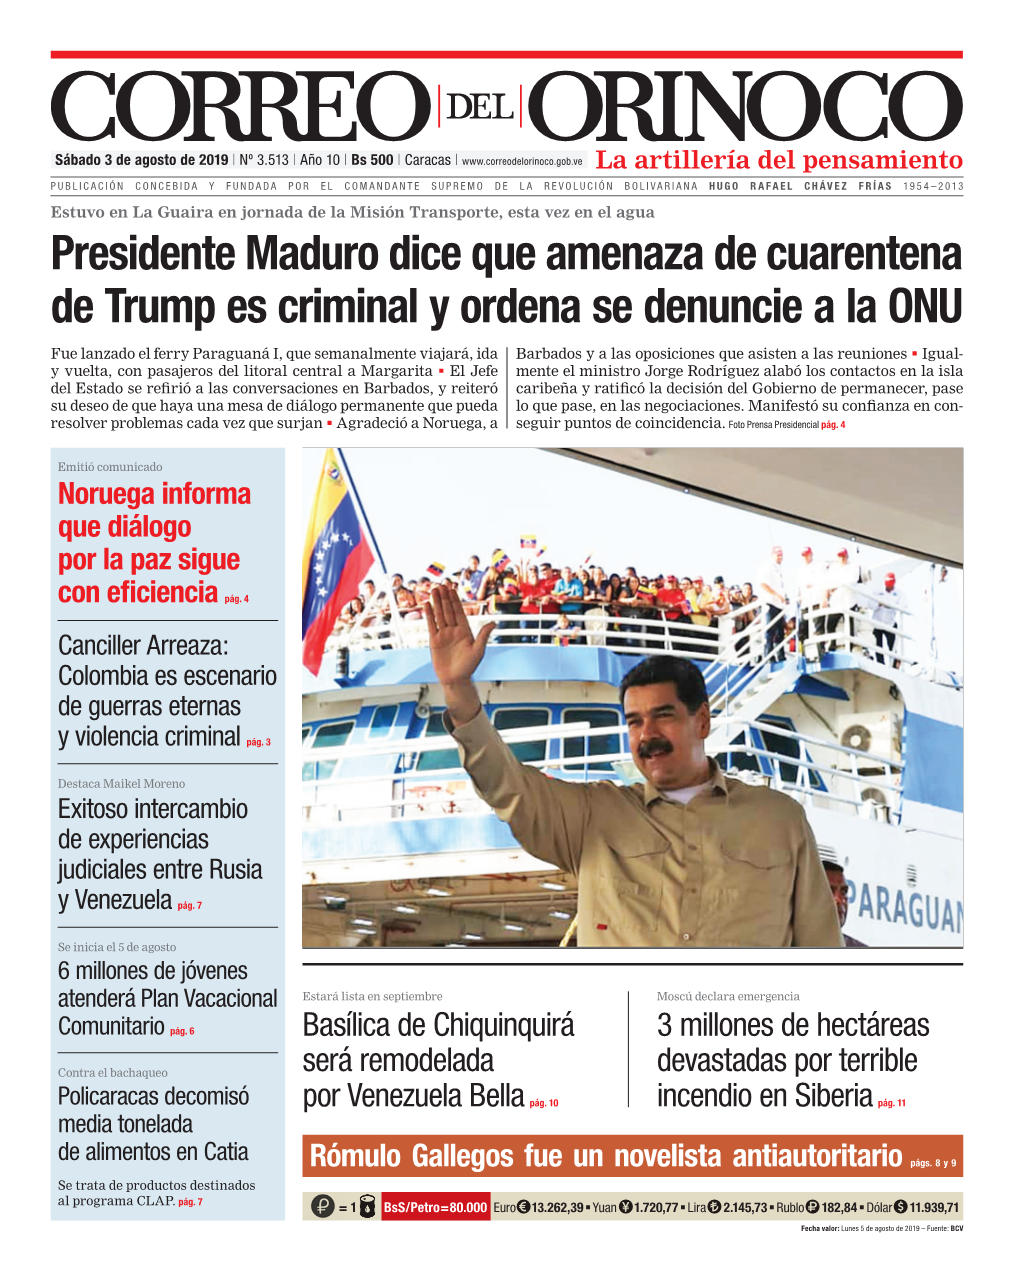 Presidente Maduro Dice Que Amenaza De Cuarentena De Trump Es Criminal Y Ordena Se Denuncie a La